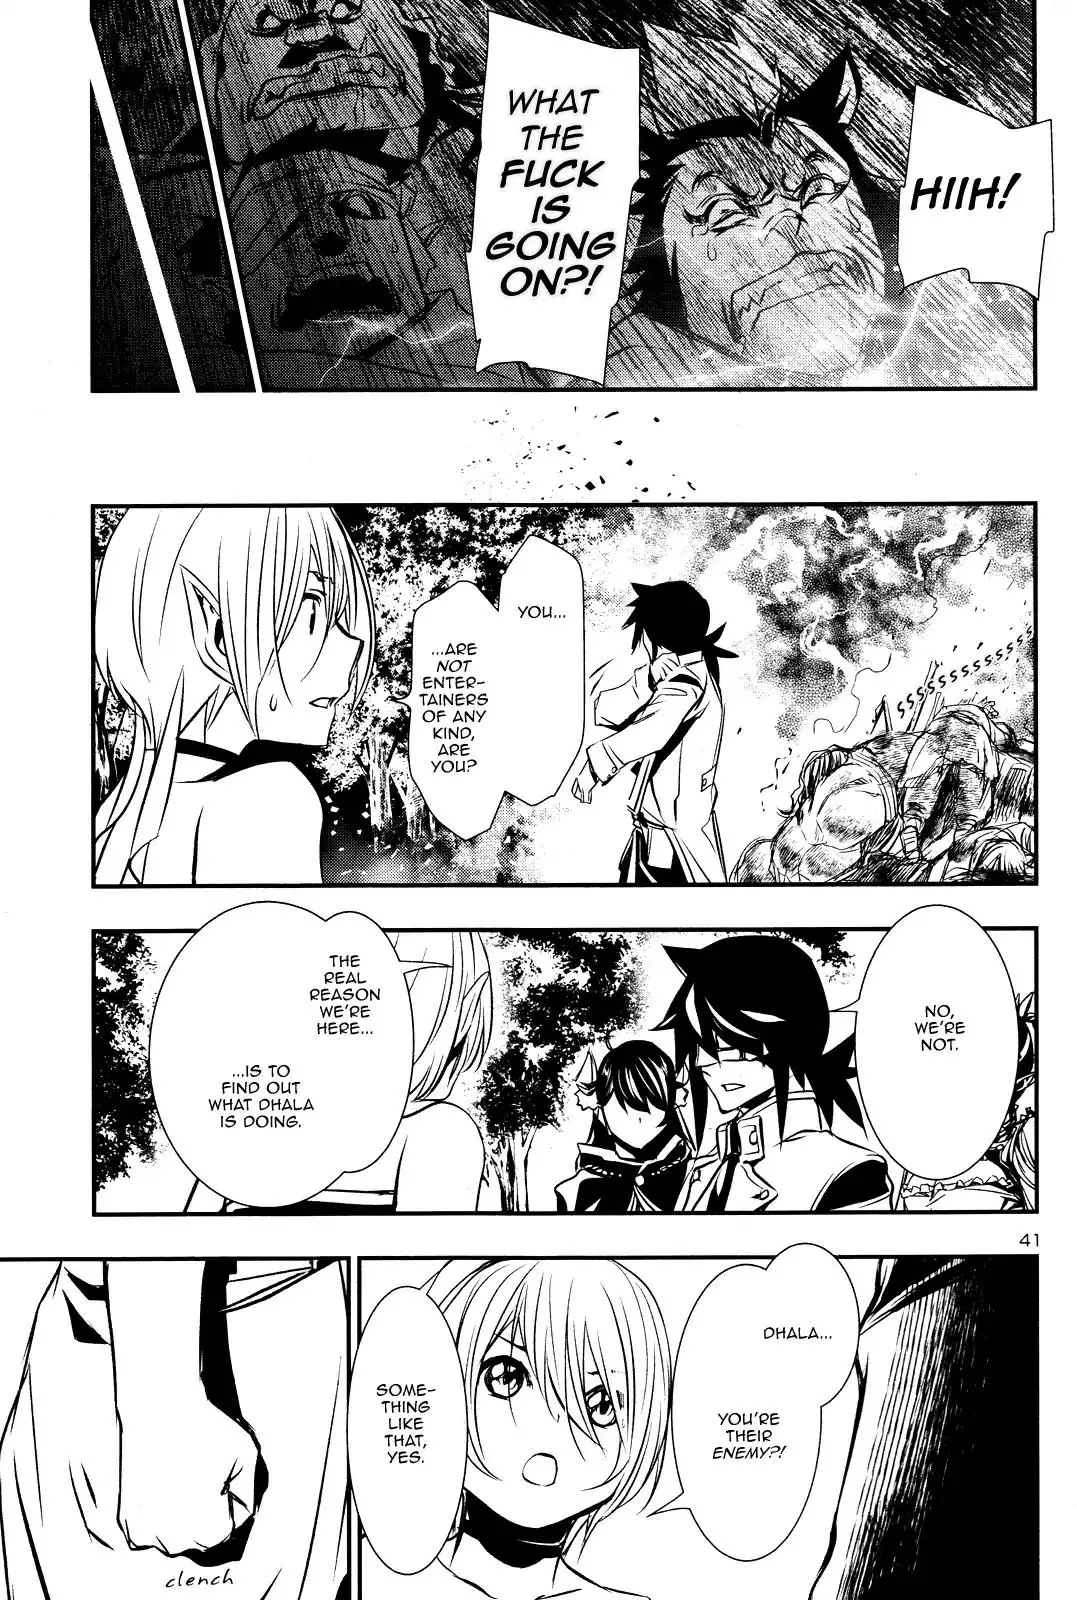 Shinju no Nectar - 14 page 40